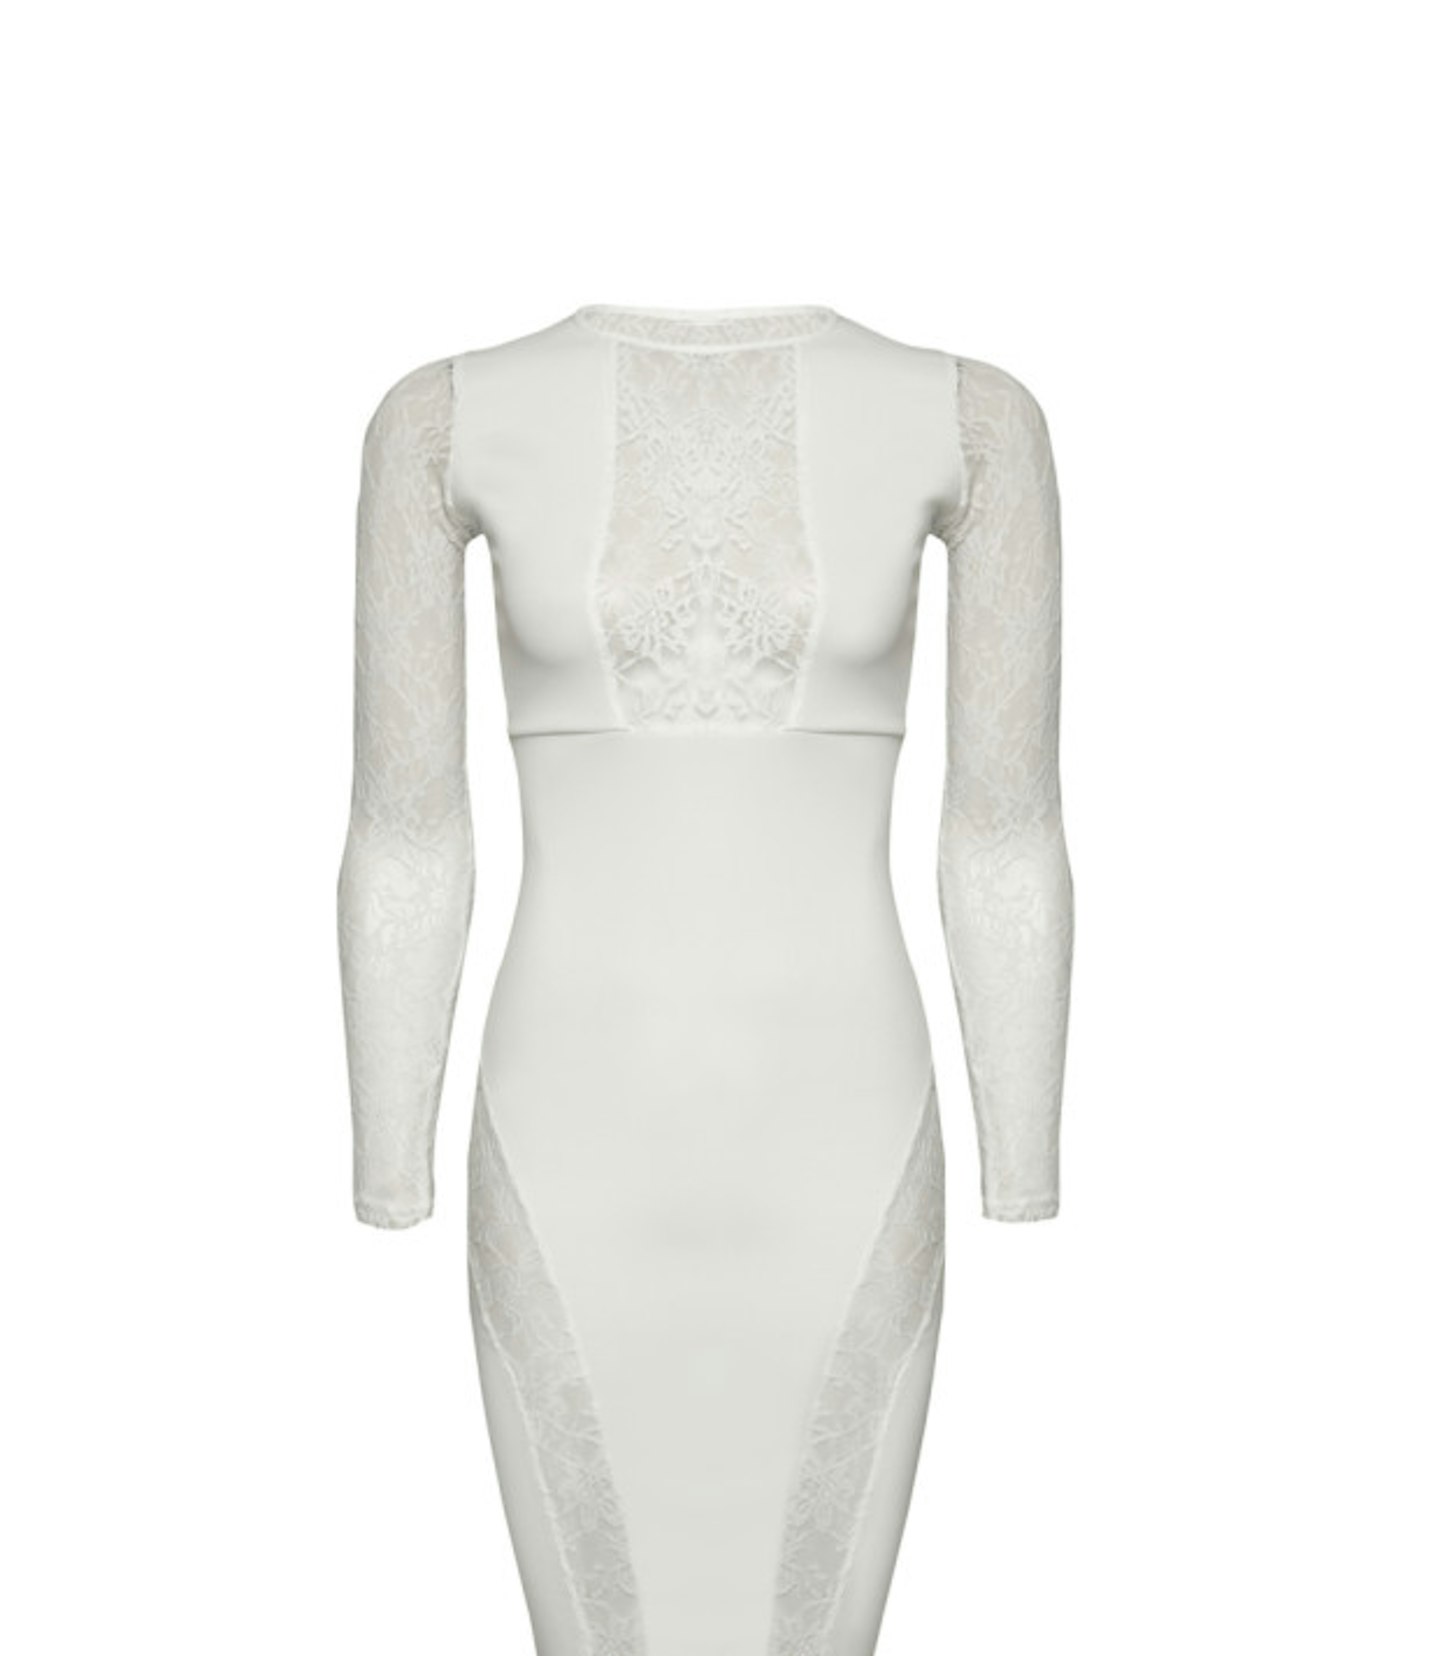 White lace insert dress